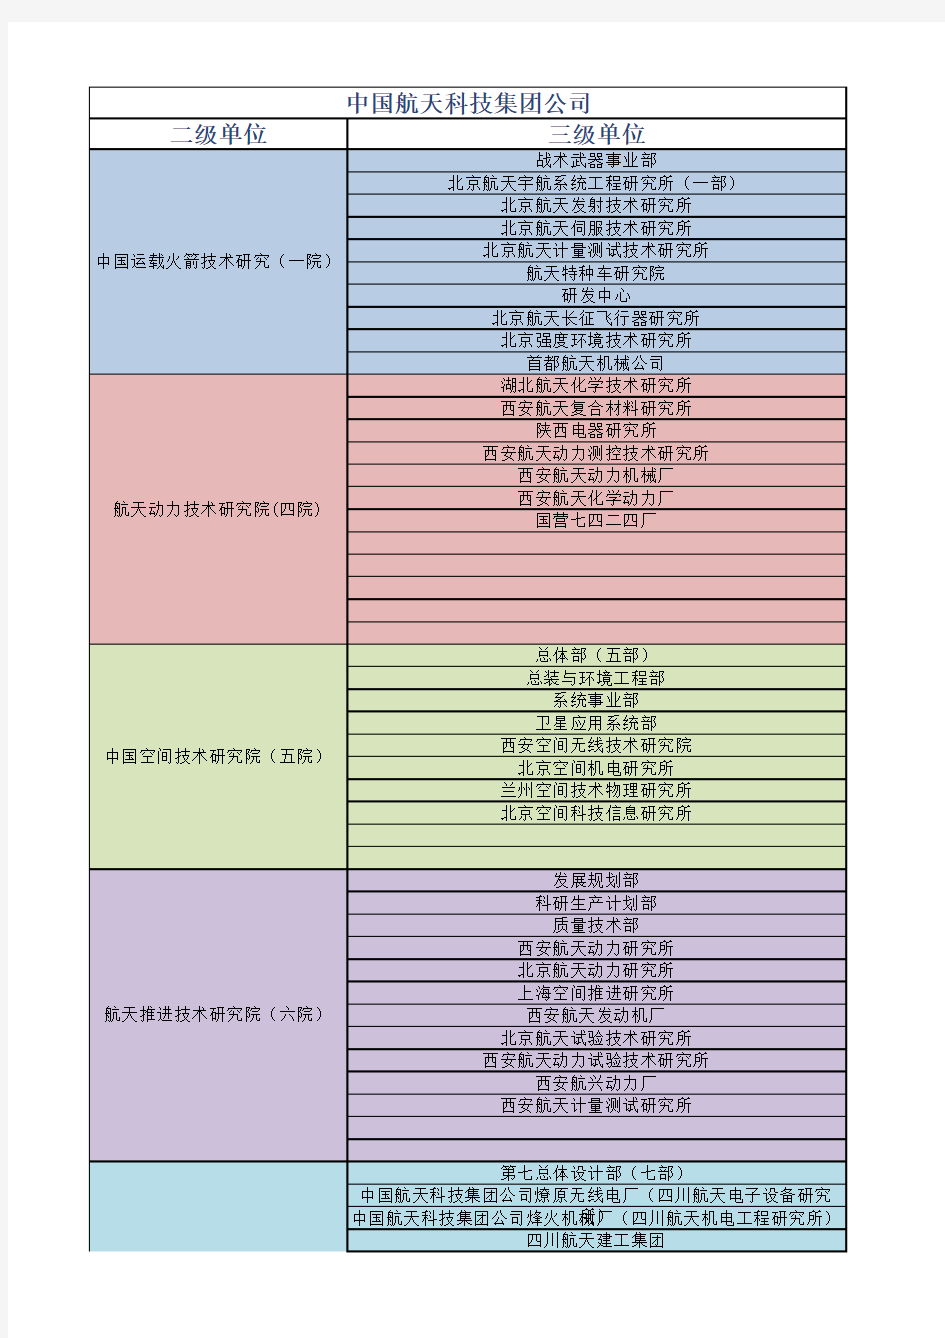 中国航天集团公司架构图